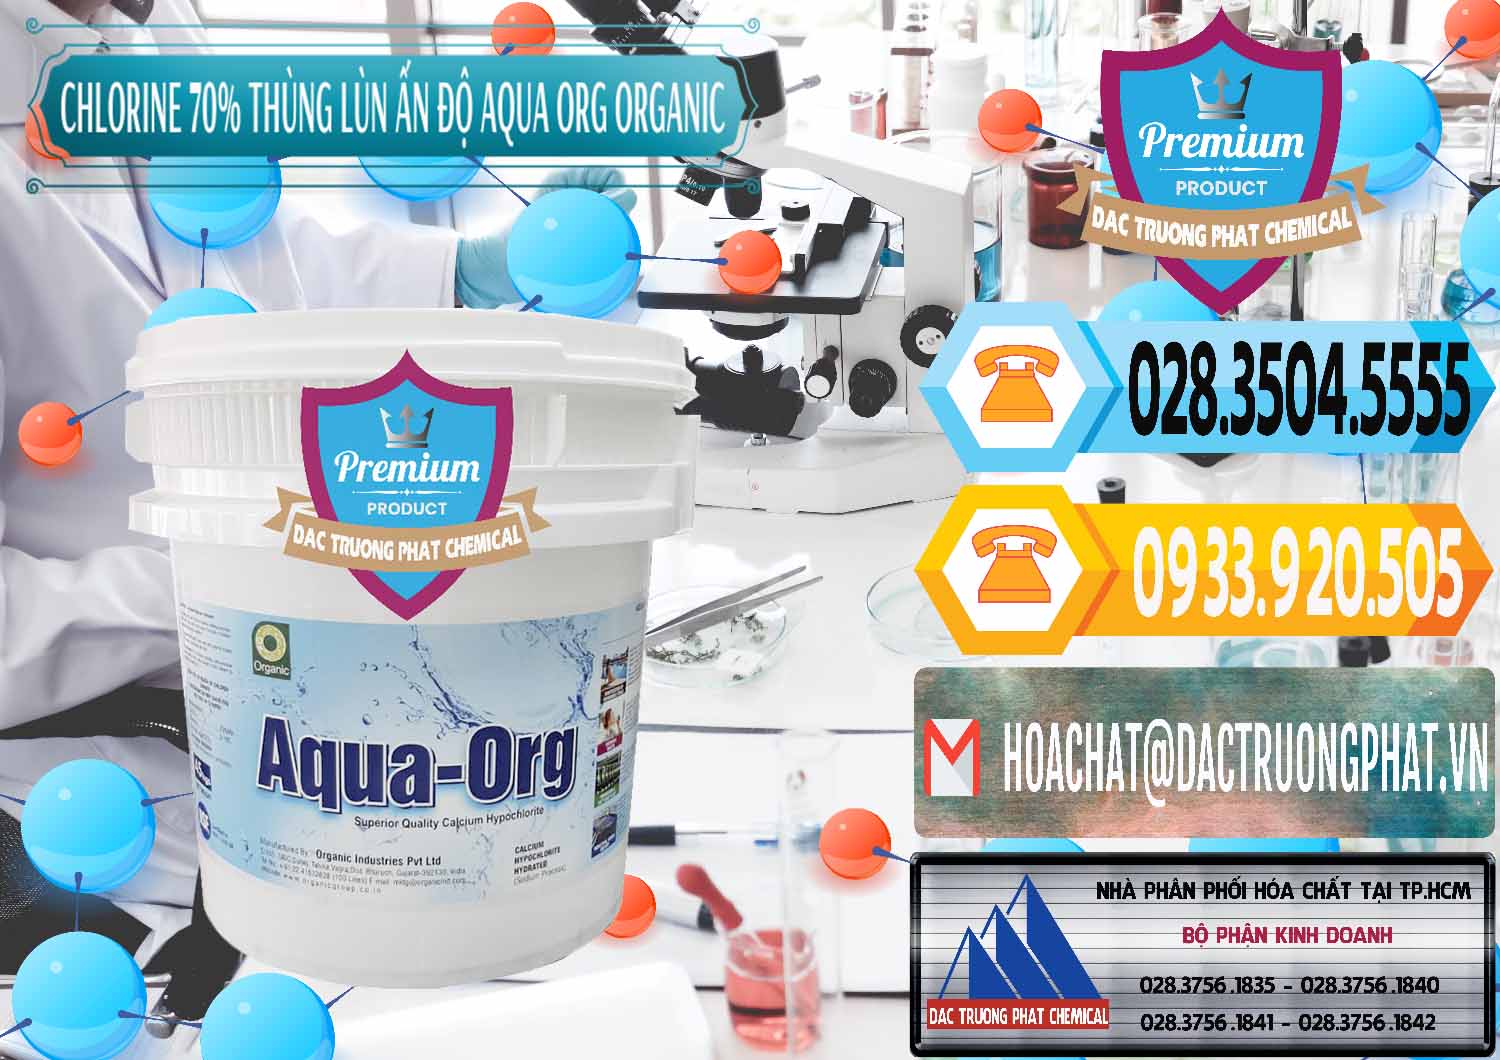 Nơi chuyên bán và cung ứng Chlorine – Clorin 70% Thùng Lùn Ấn Độ Aqua ORG Organic India - 0212 - Bán - cung cấp hóa chất tại TP.HCM - hoachattayrua.net